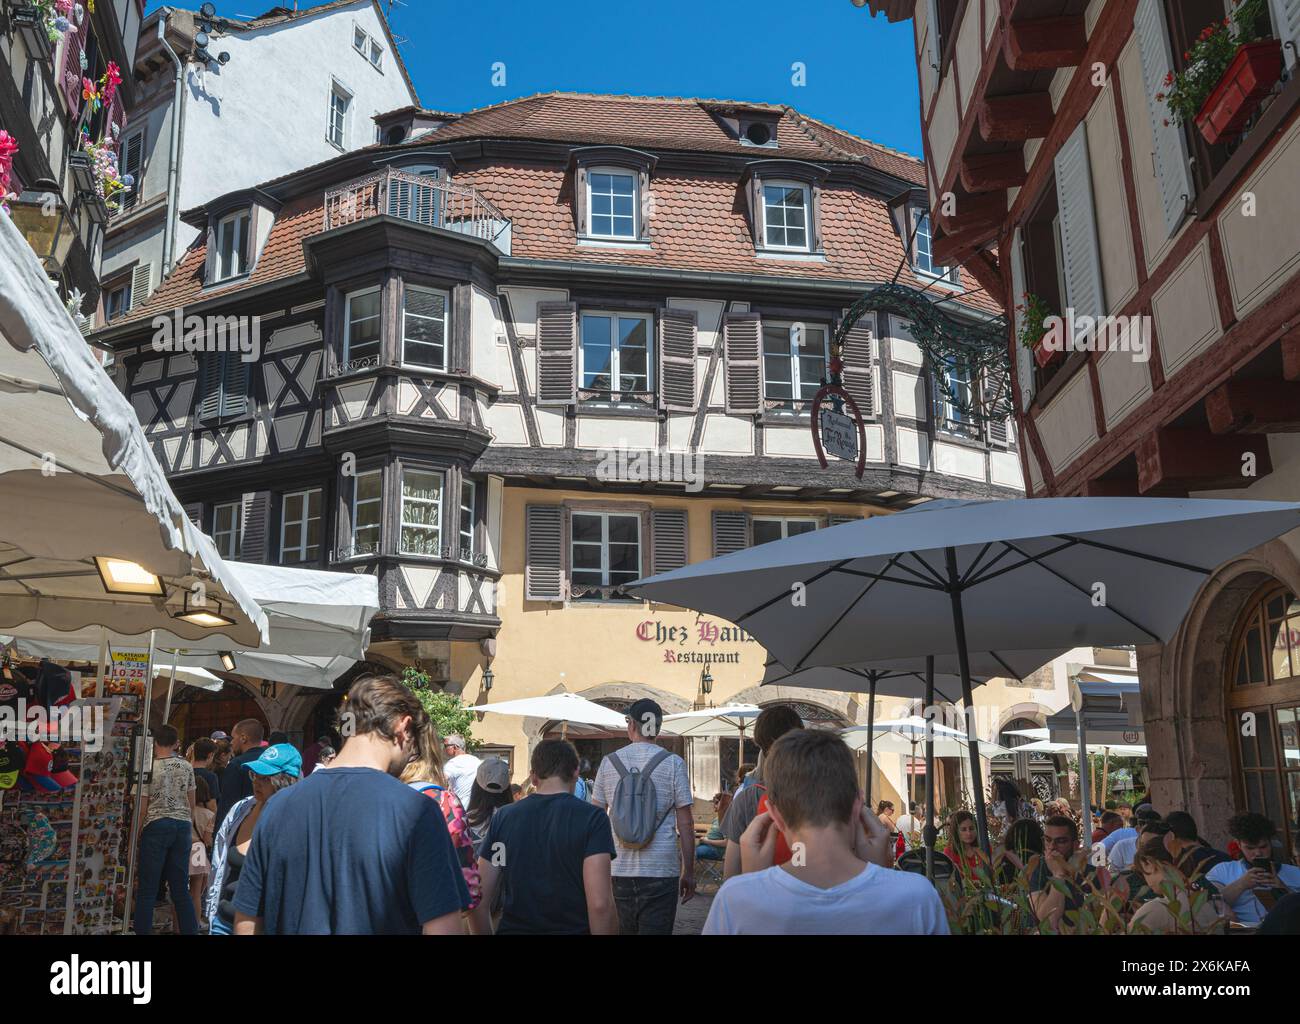 Die wunderschöne Altstadt von Colmar. Elsass, Frankreich, Europa Stockfoto